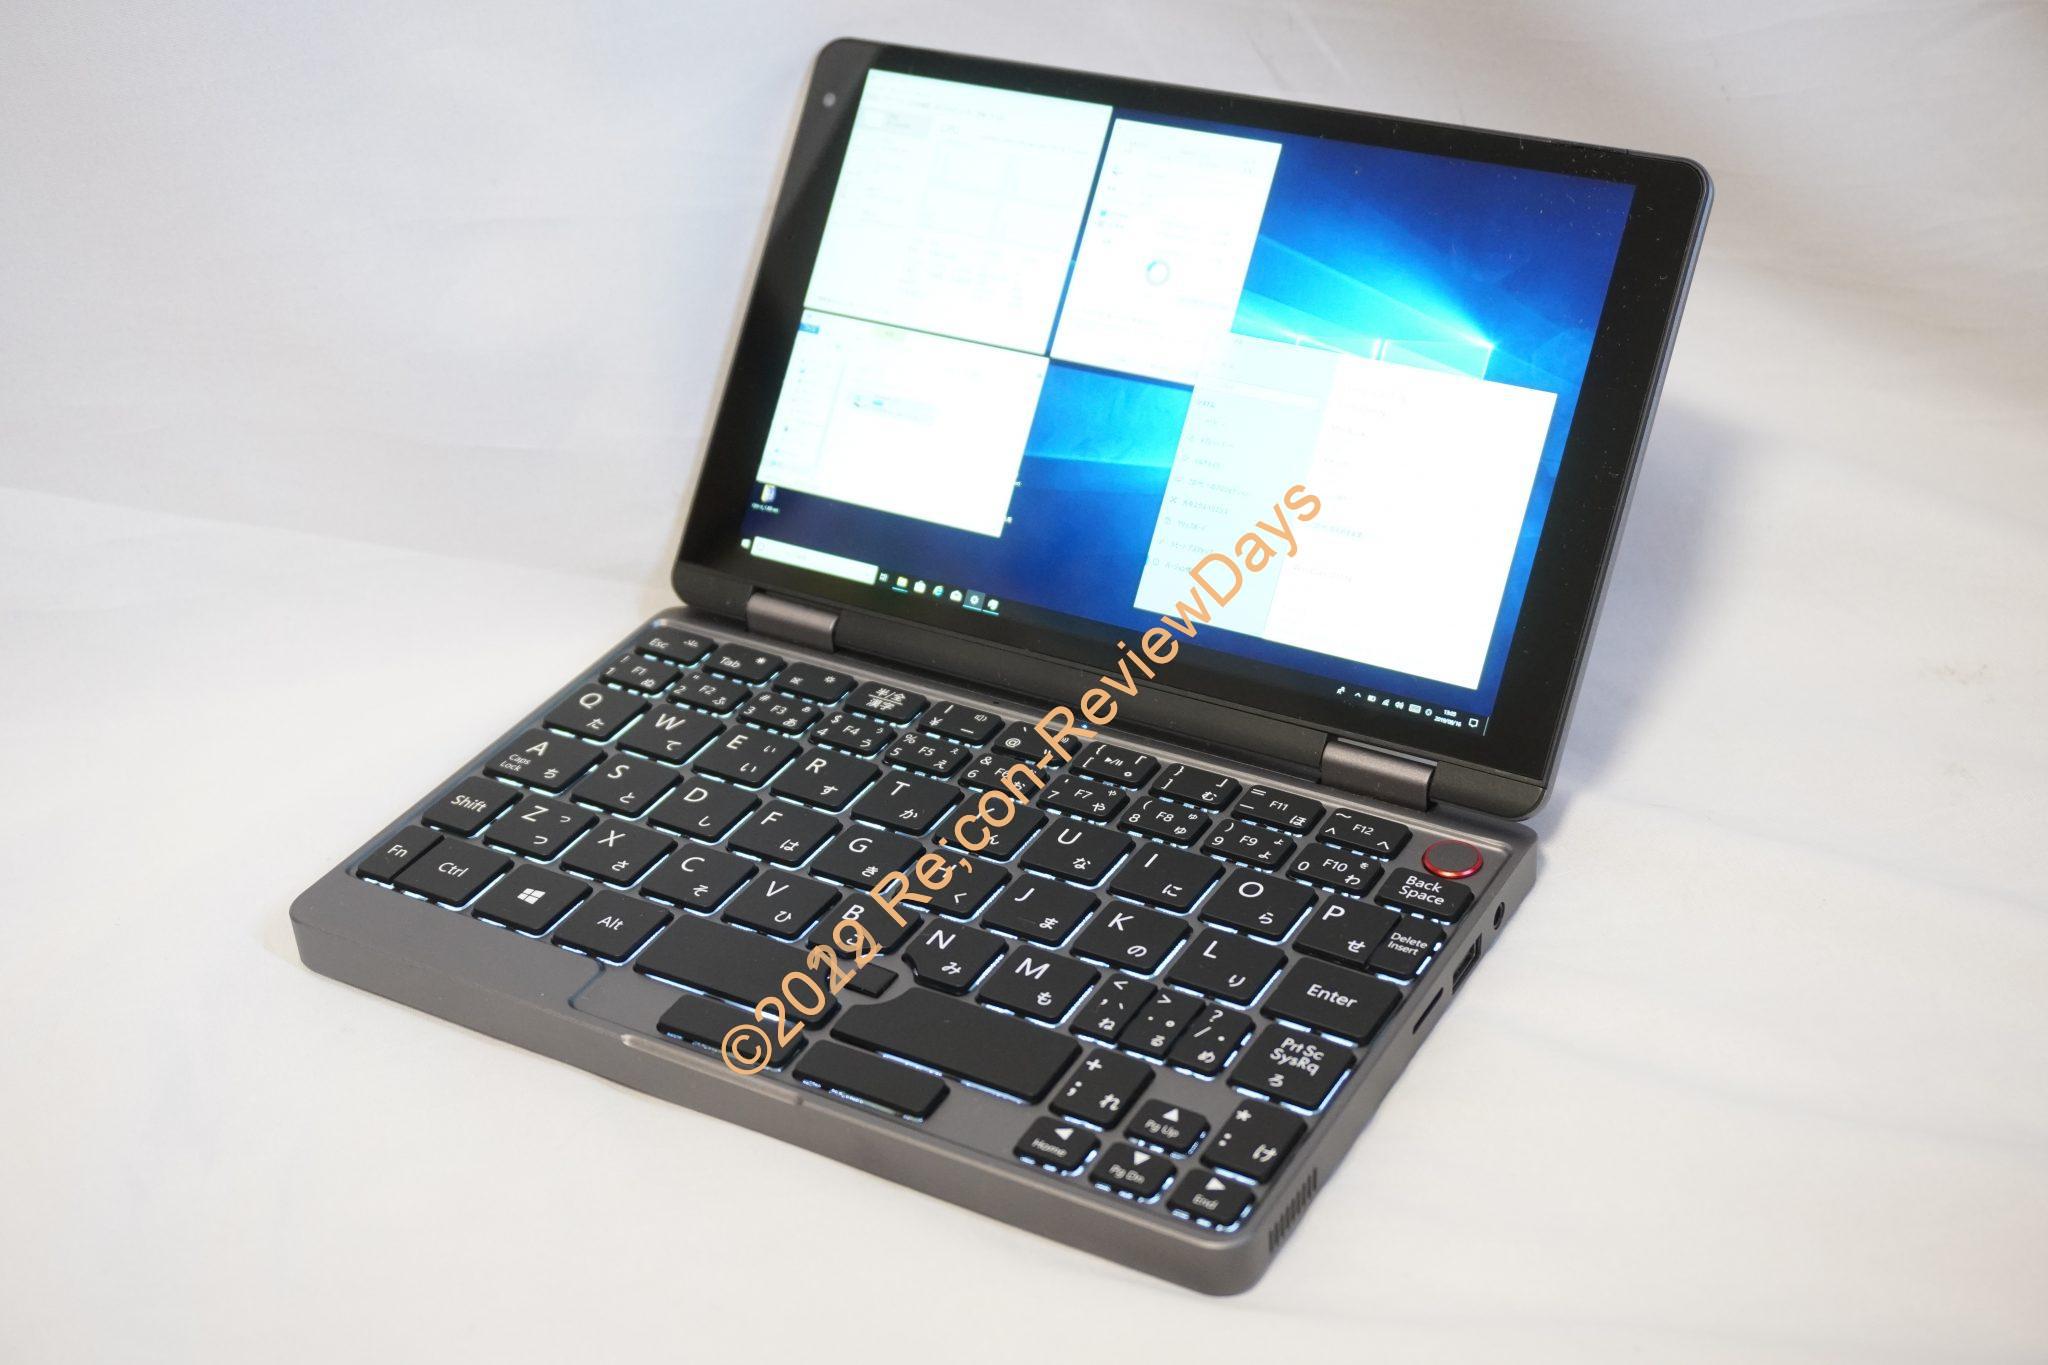 CHUWI MiniBook N4100モデルの量産前サンプルをチェックしていく #CHUWI #MiniBook #UMPC #INDIEGOGO #クラウドファンディング #レビュー